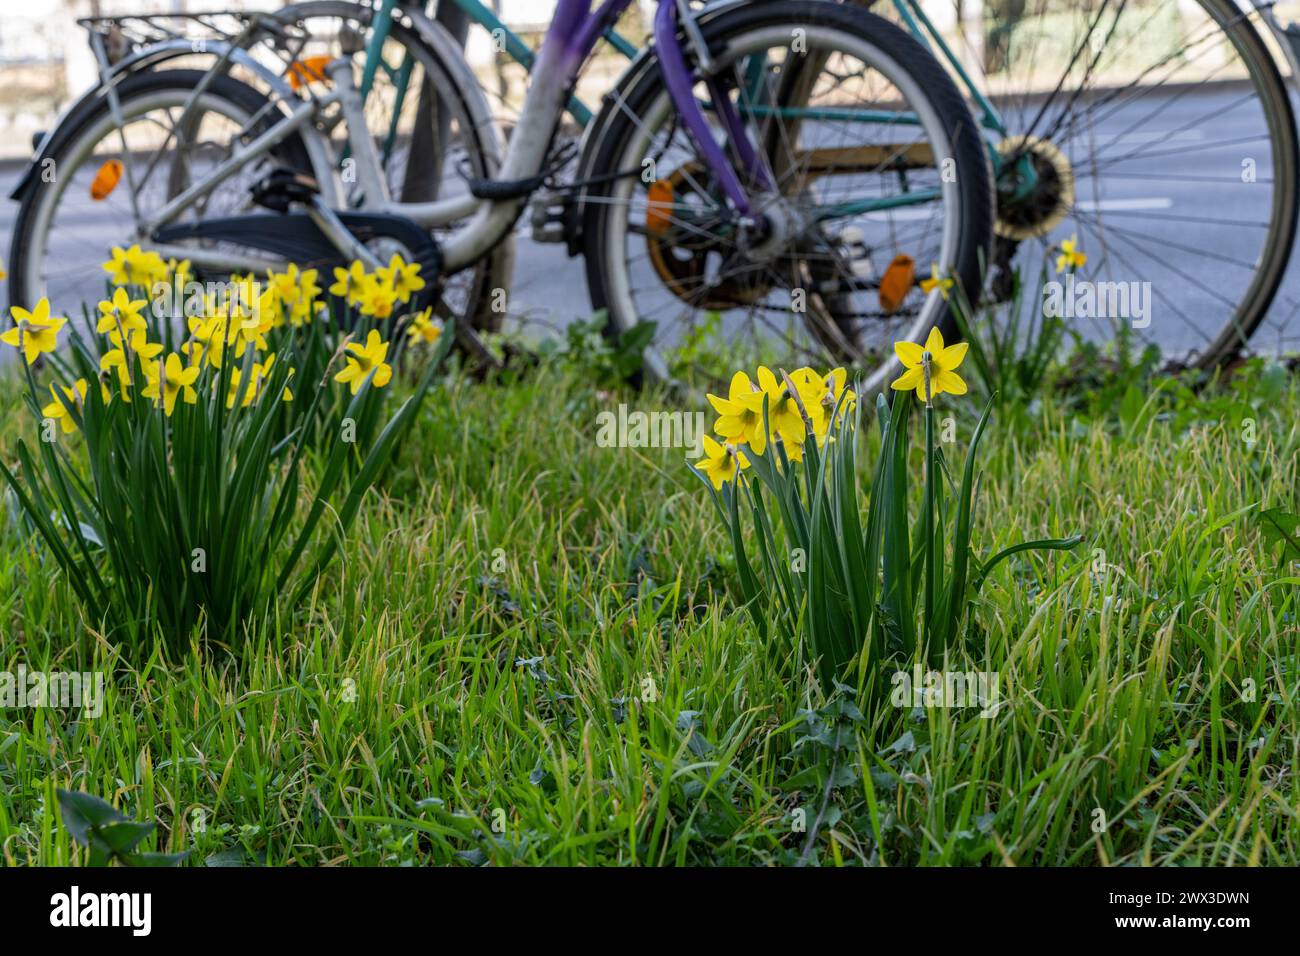 Biciclette abbandonate in Un'area verde a bordo strada, Berlino, Germania Foto Stock